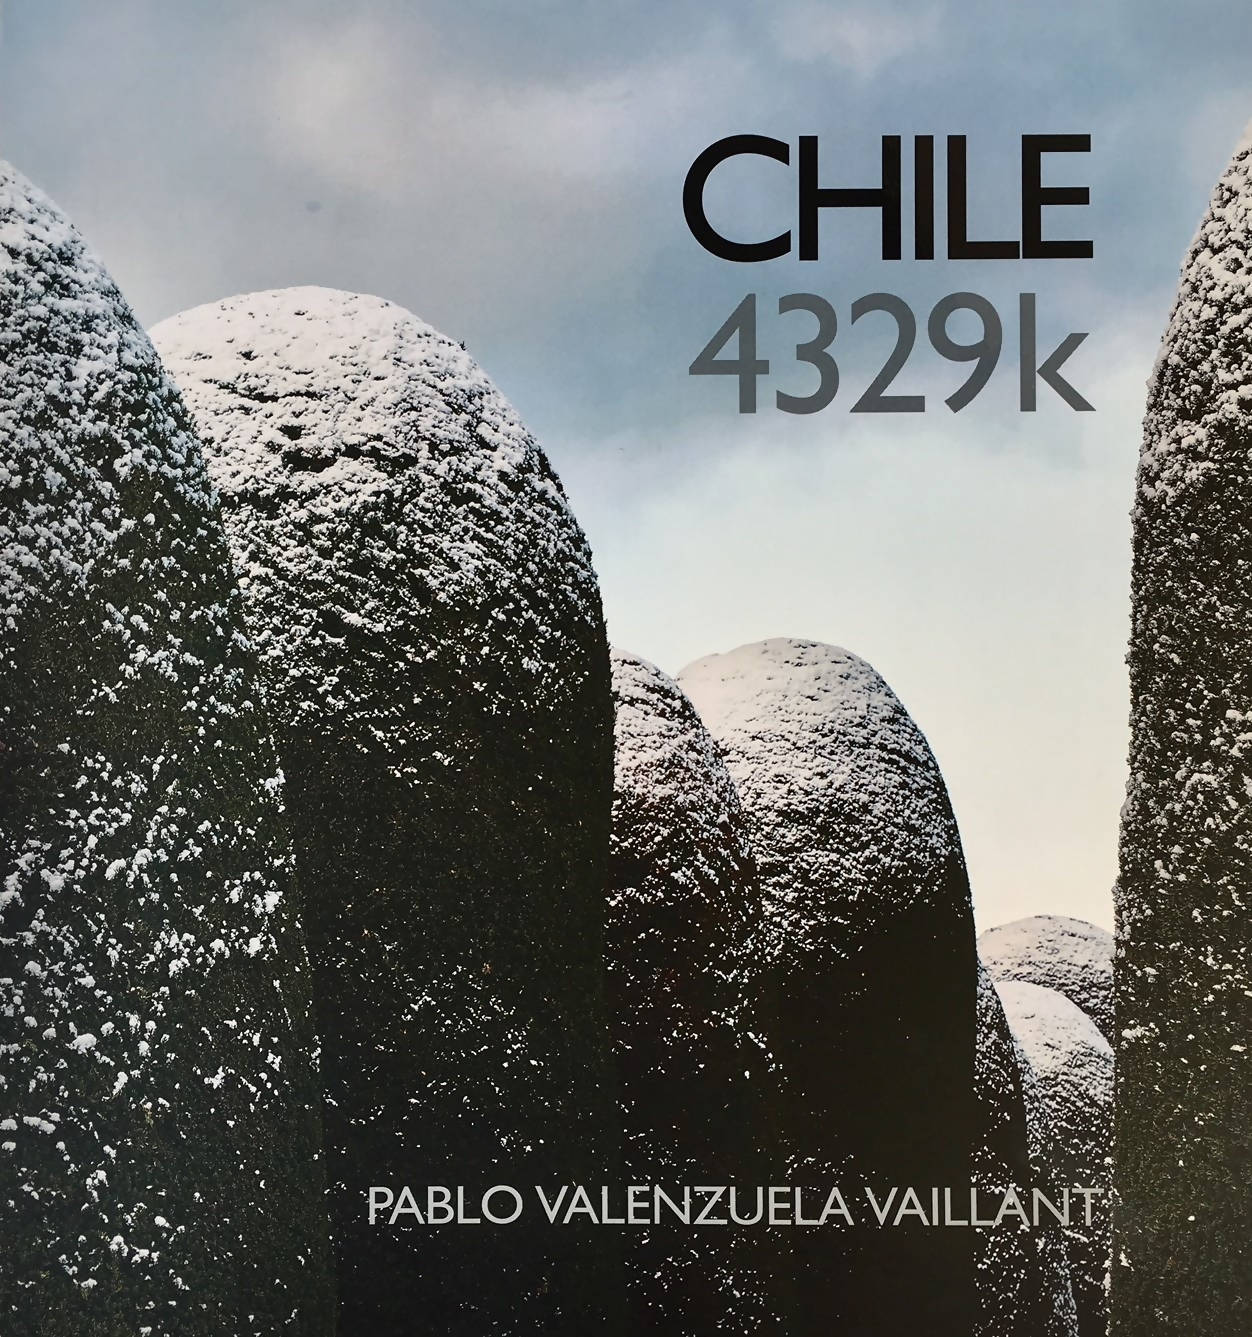 Libro Chile 4329 k